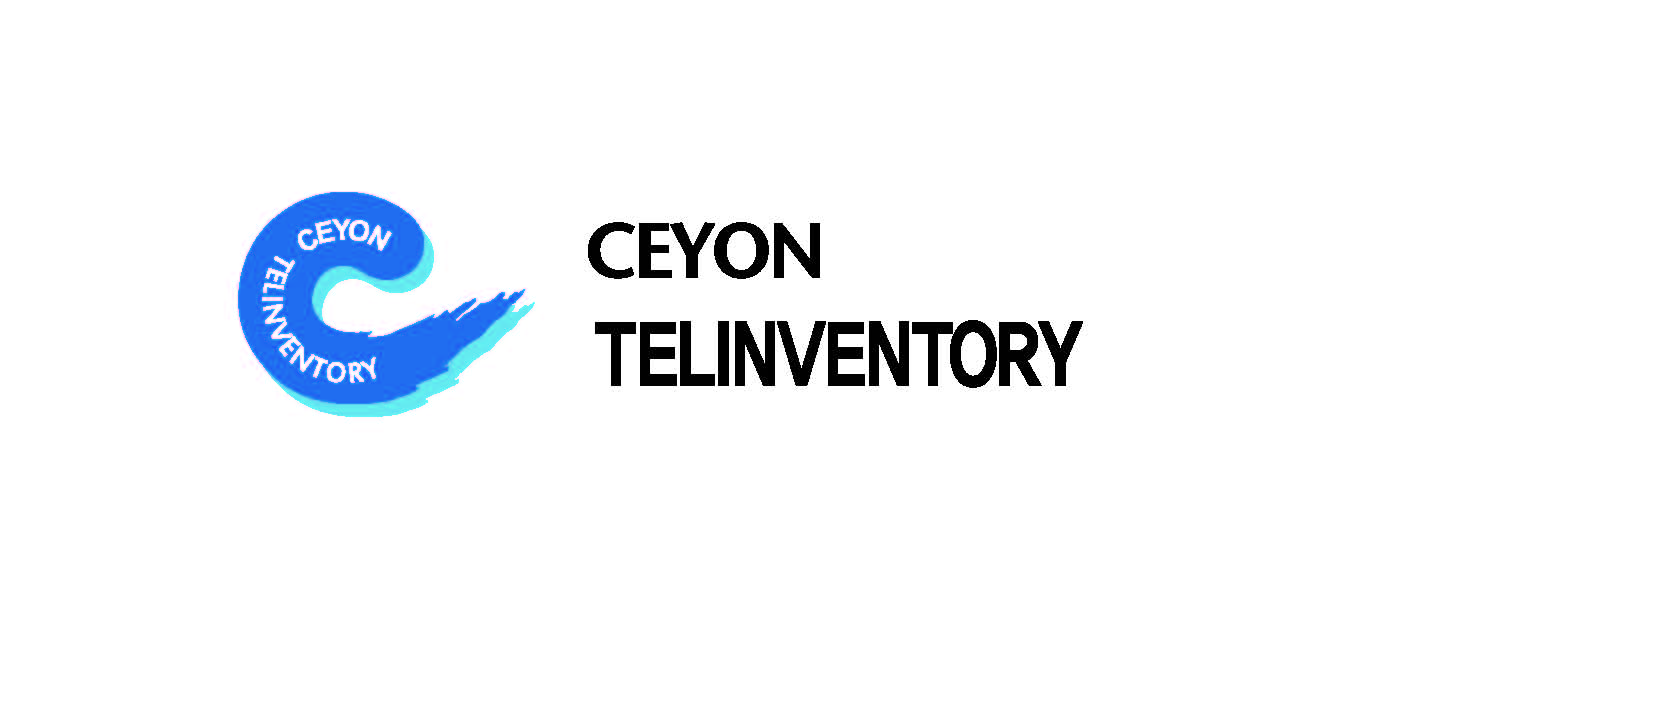 Ceyon Telinventory Co., Ltd.